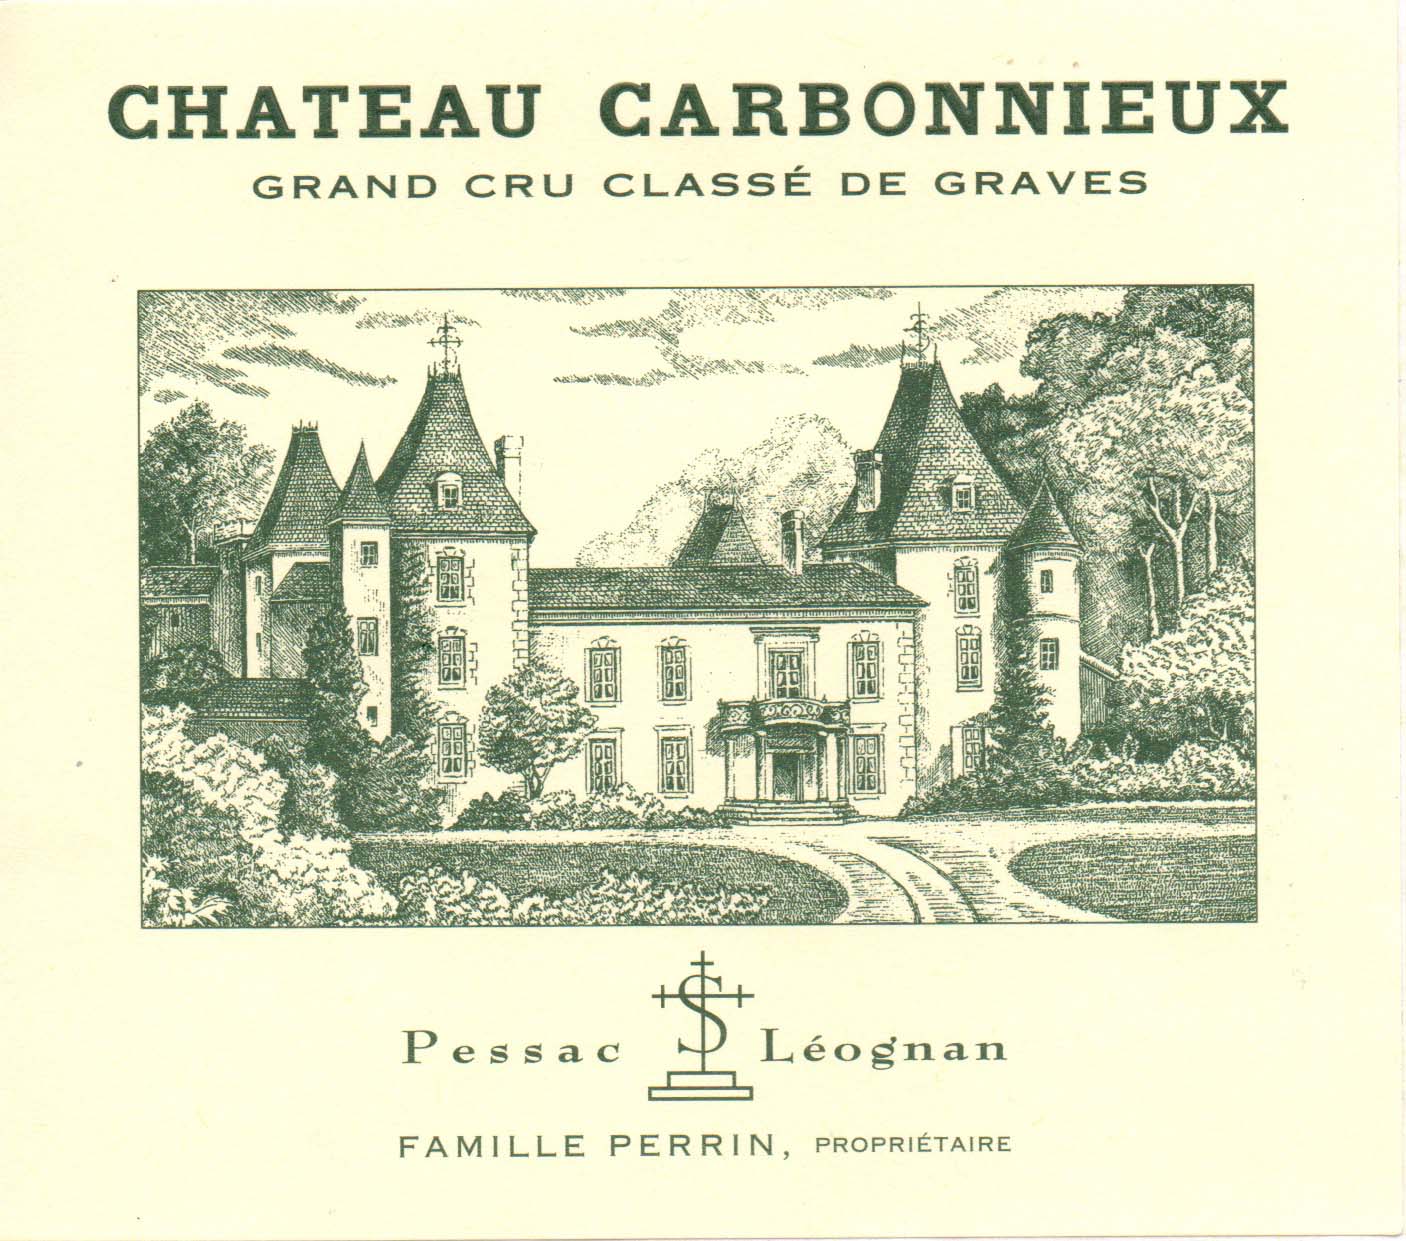 Chateau Carbonnieux Rouge label